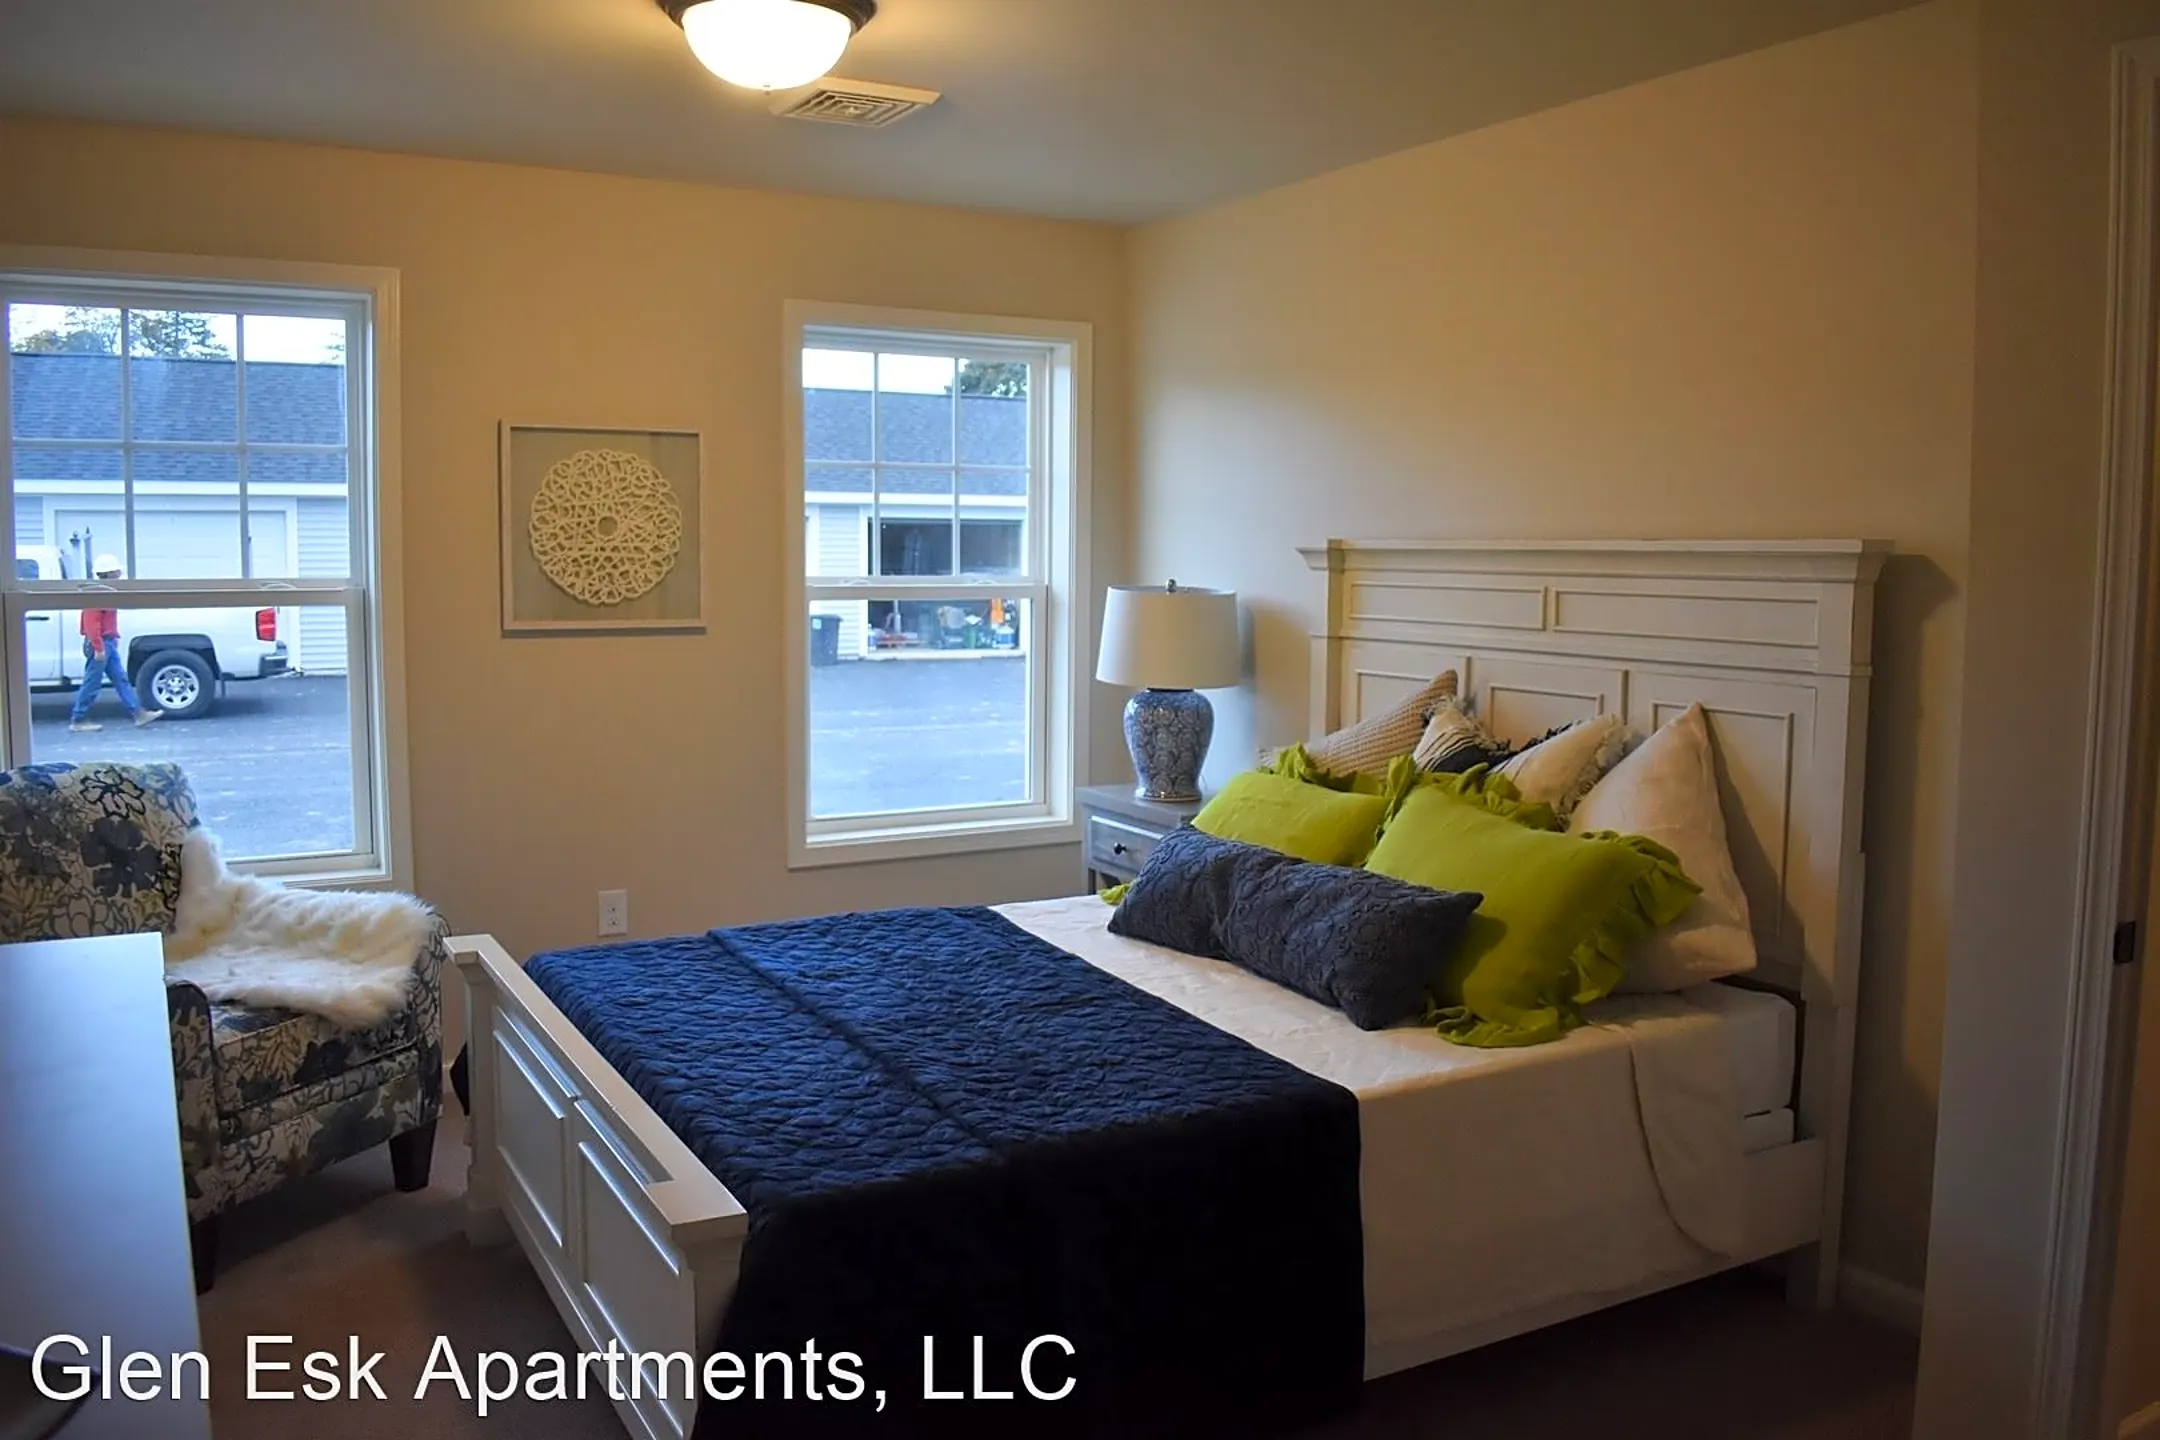 Living Room - Glen Esk Apartments - Glenville, NY